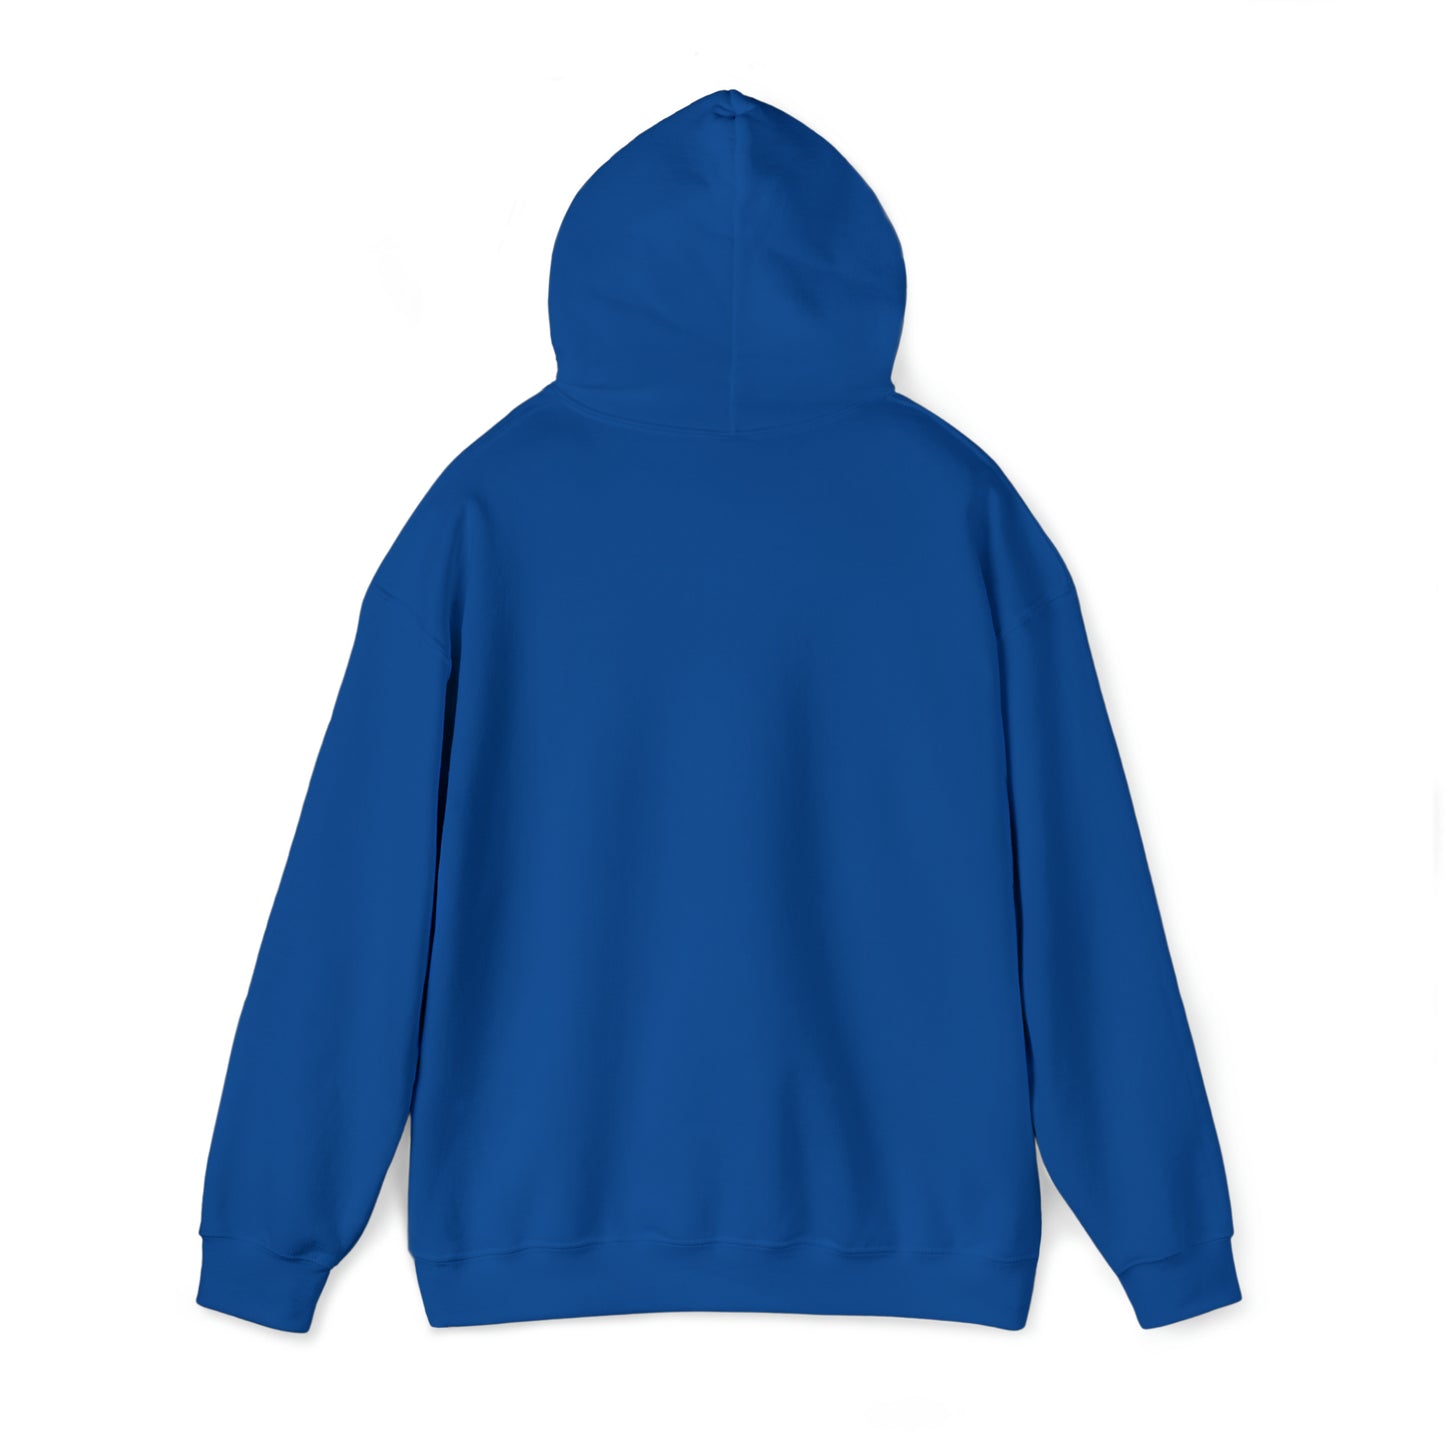 She Is Fierce Unisex Heavy Blend™ Hooded Sweatshirt